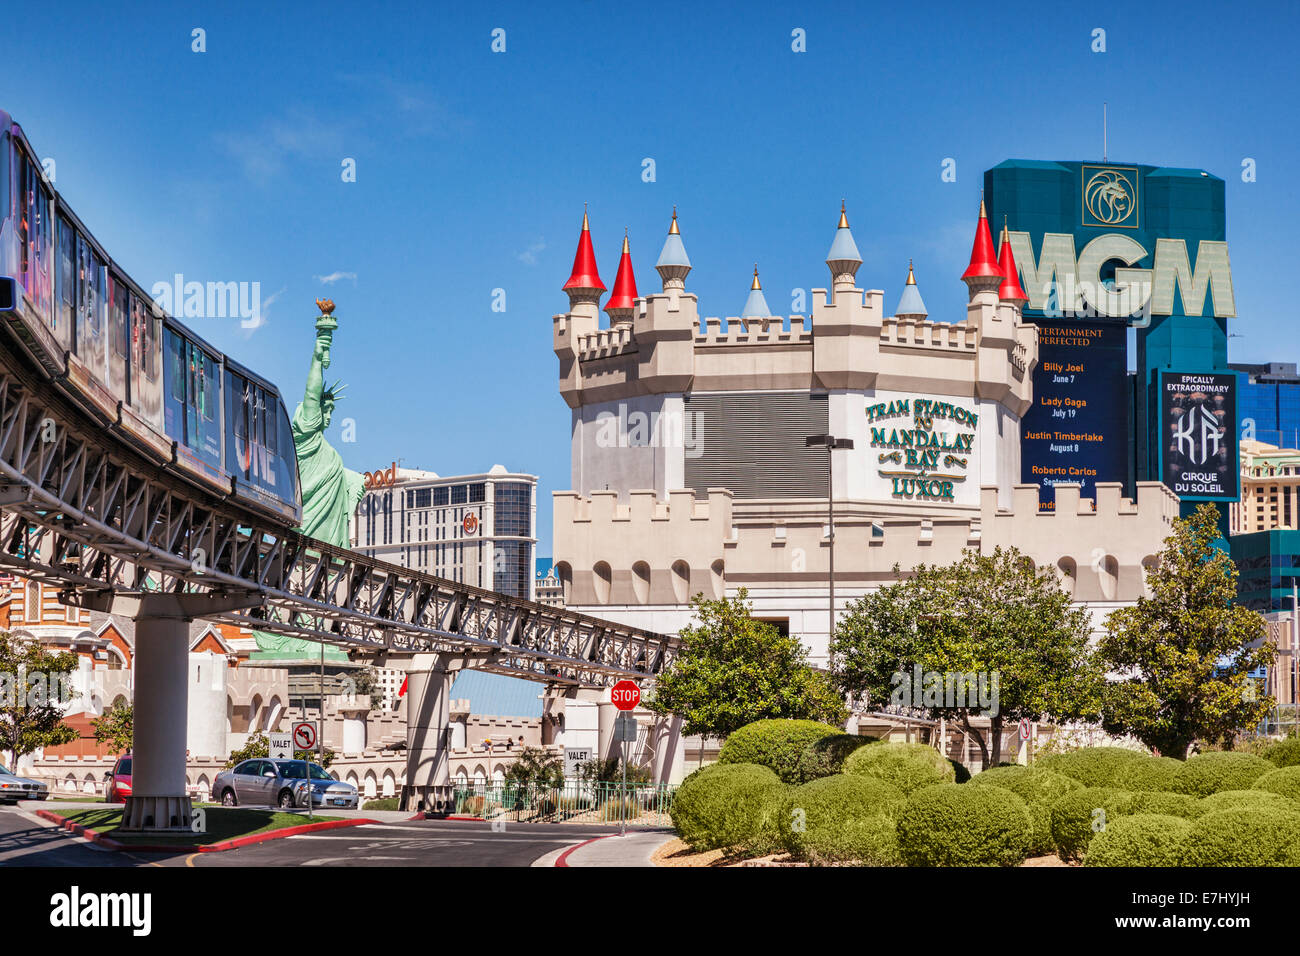 Street scene in Las Vegas, Nevada, USA Stock Photo